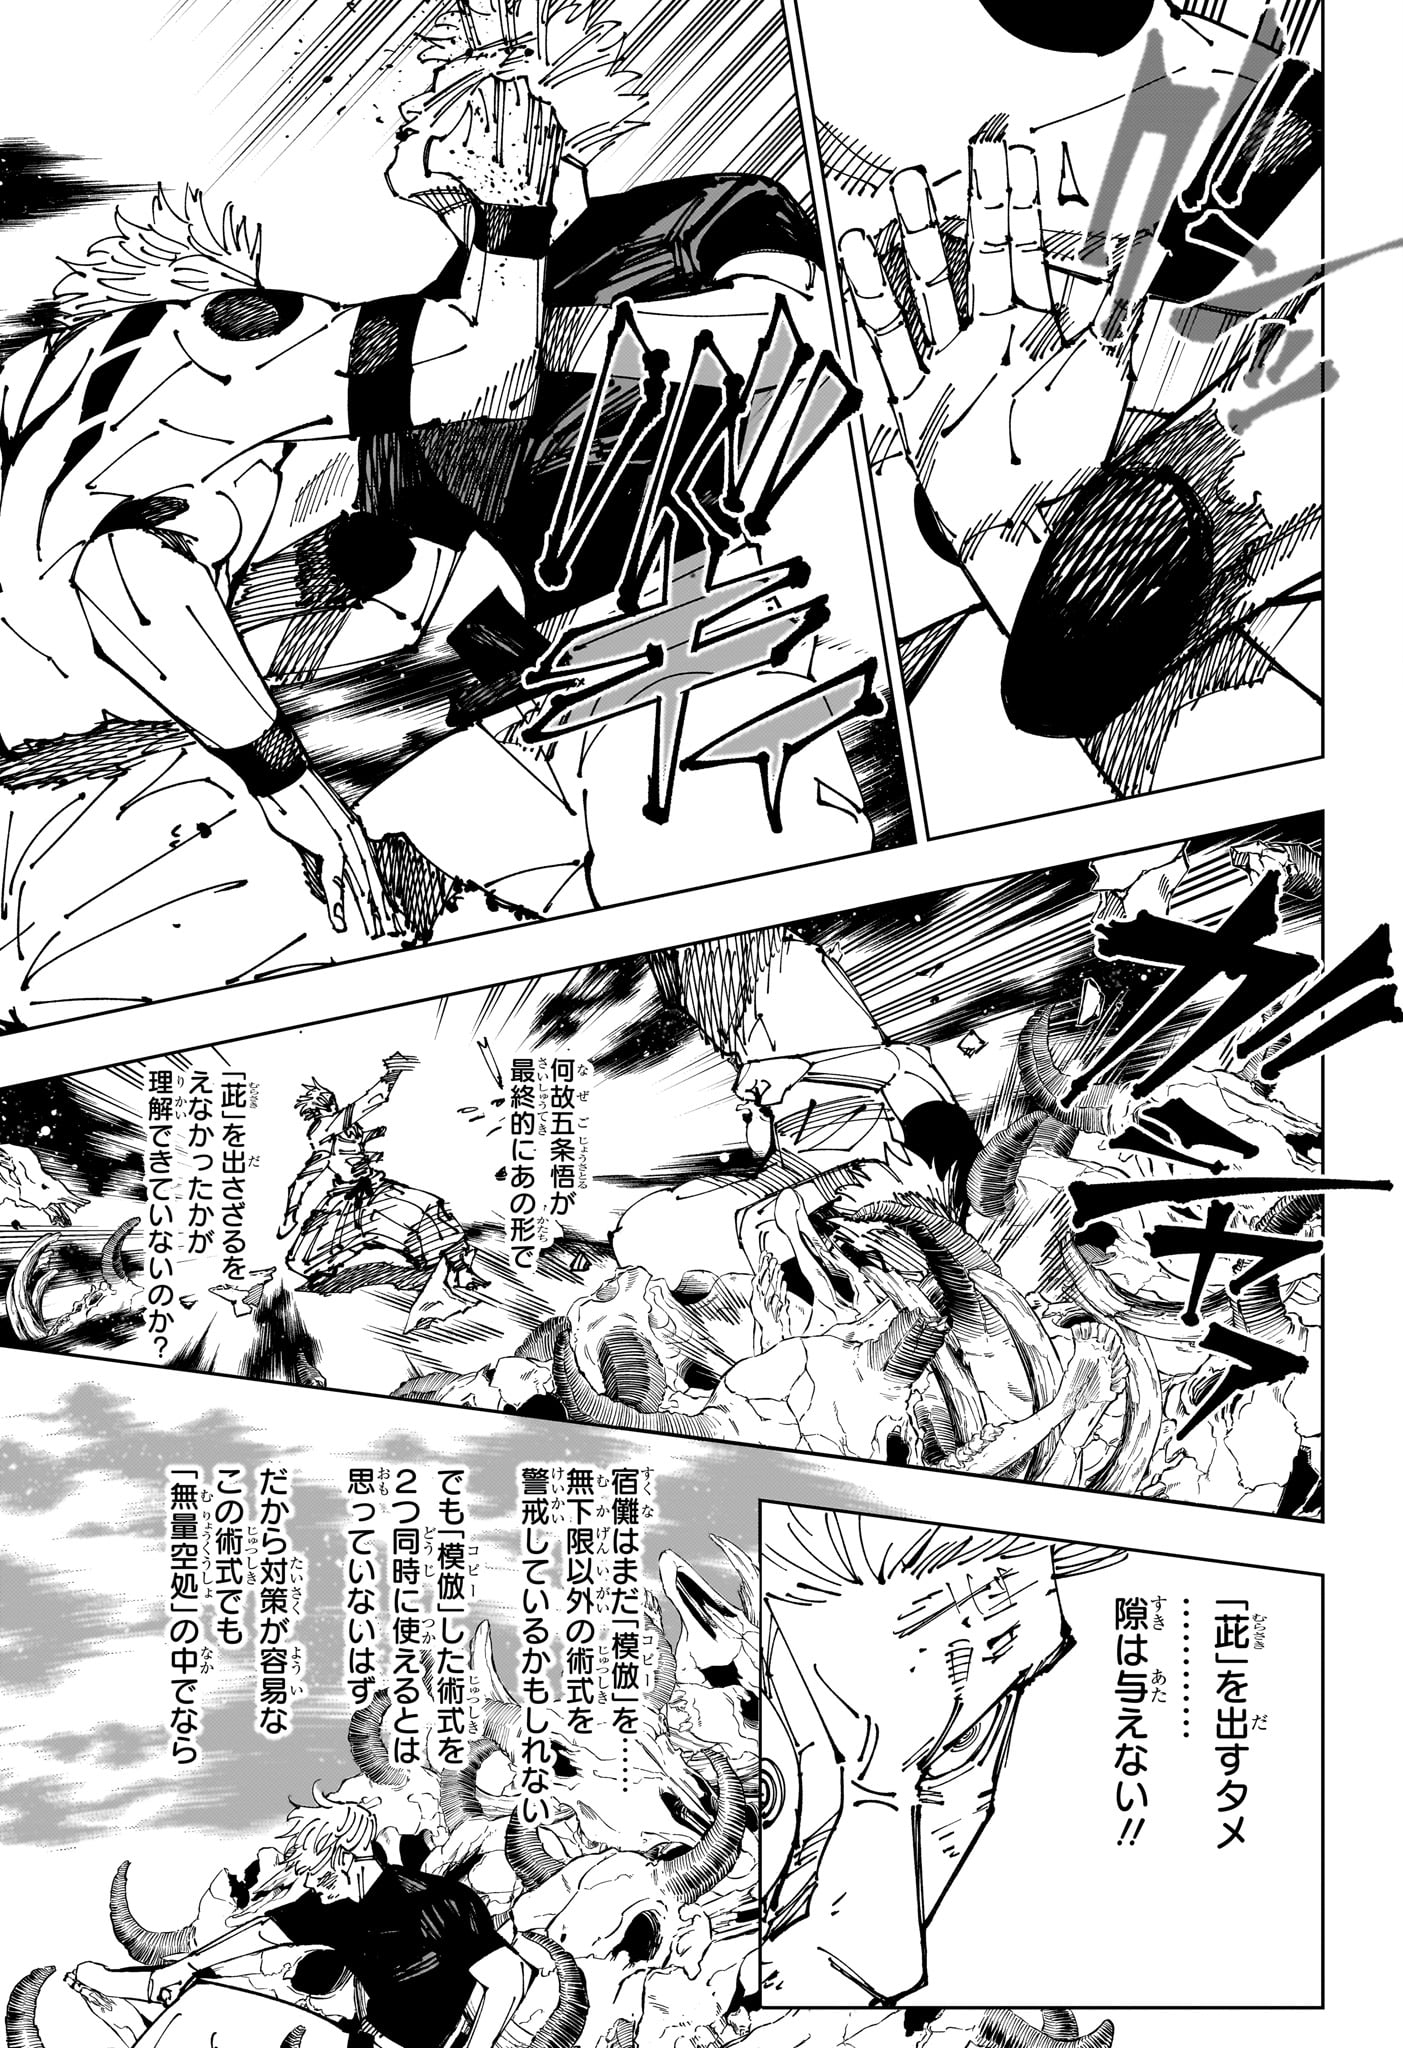 Jujutsu Kaisen - Chapter 262.2 - Page 9